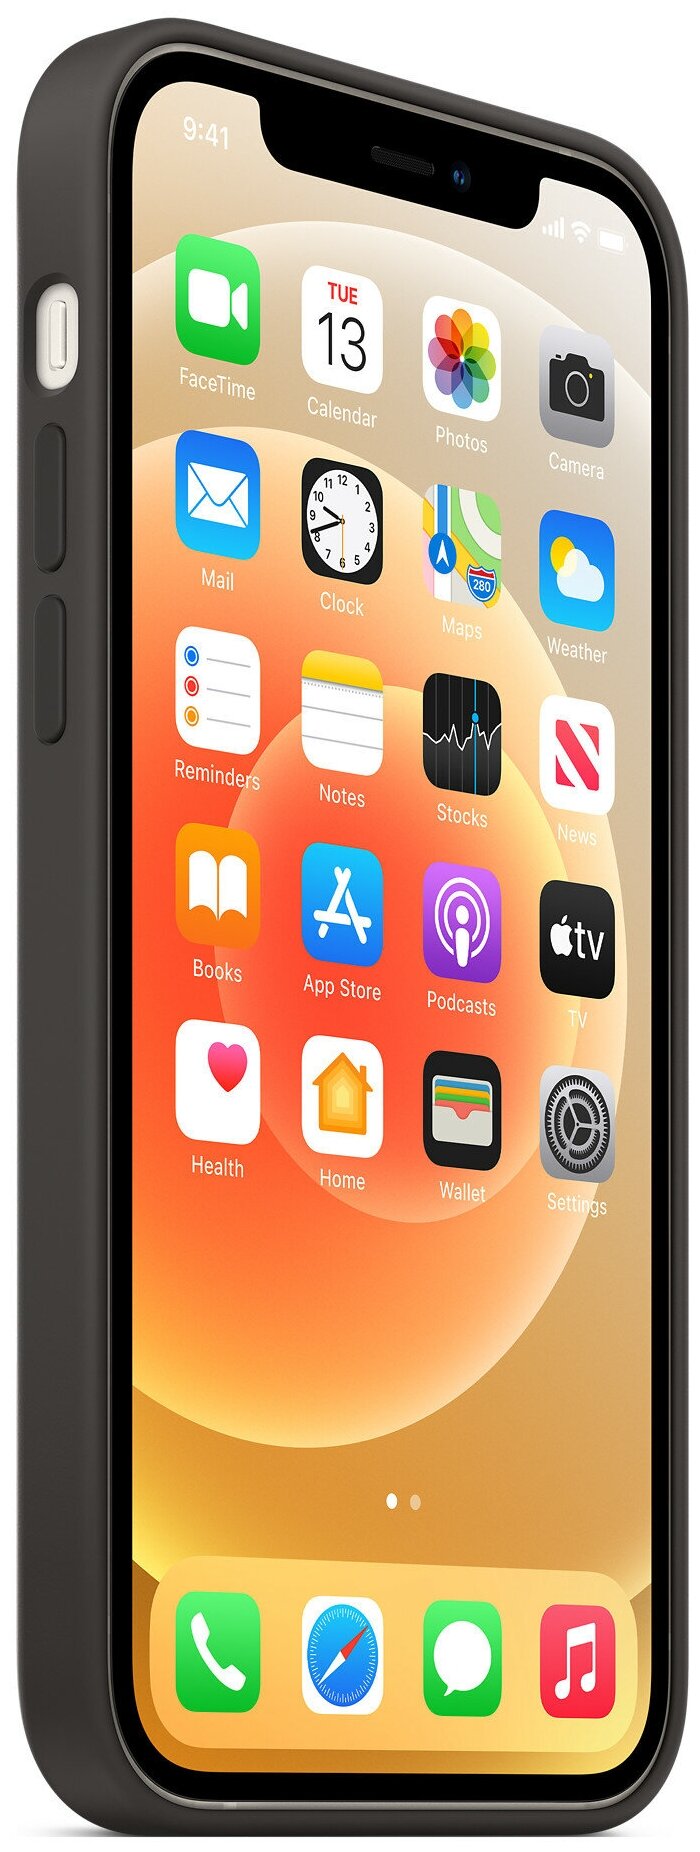 Чехол Apple MagSafe силиконовый для iPhone 12/iPhone 12 Pro